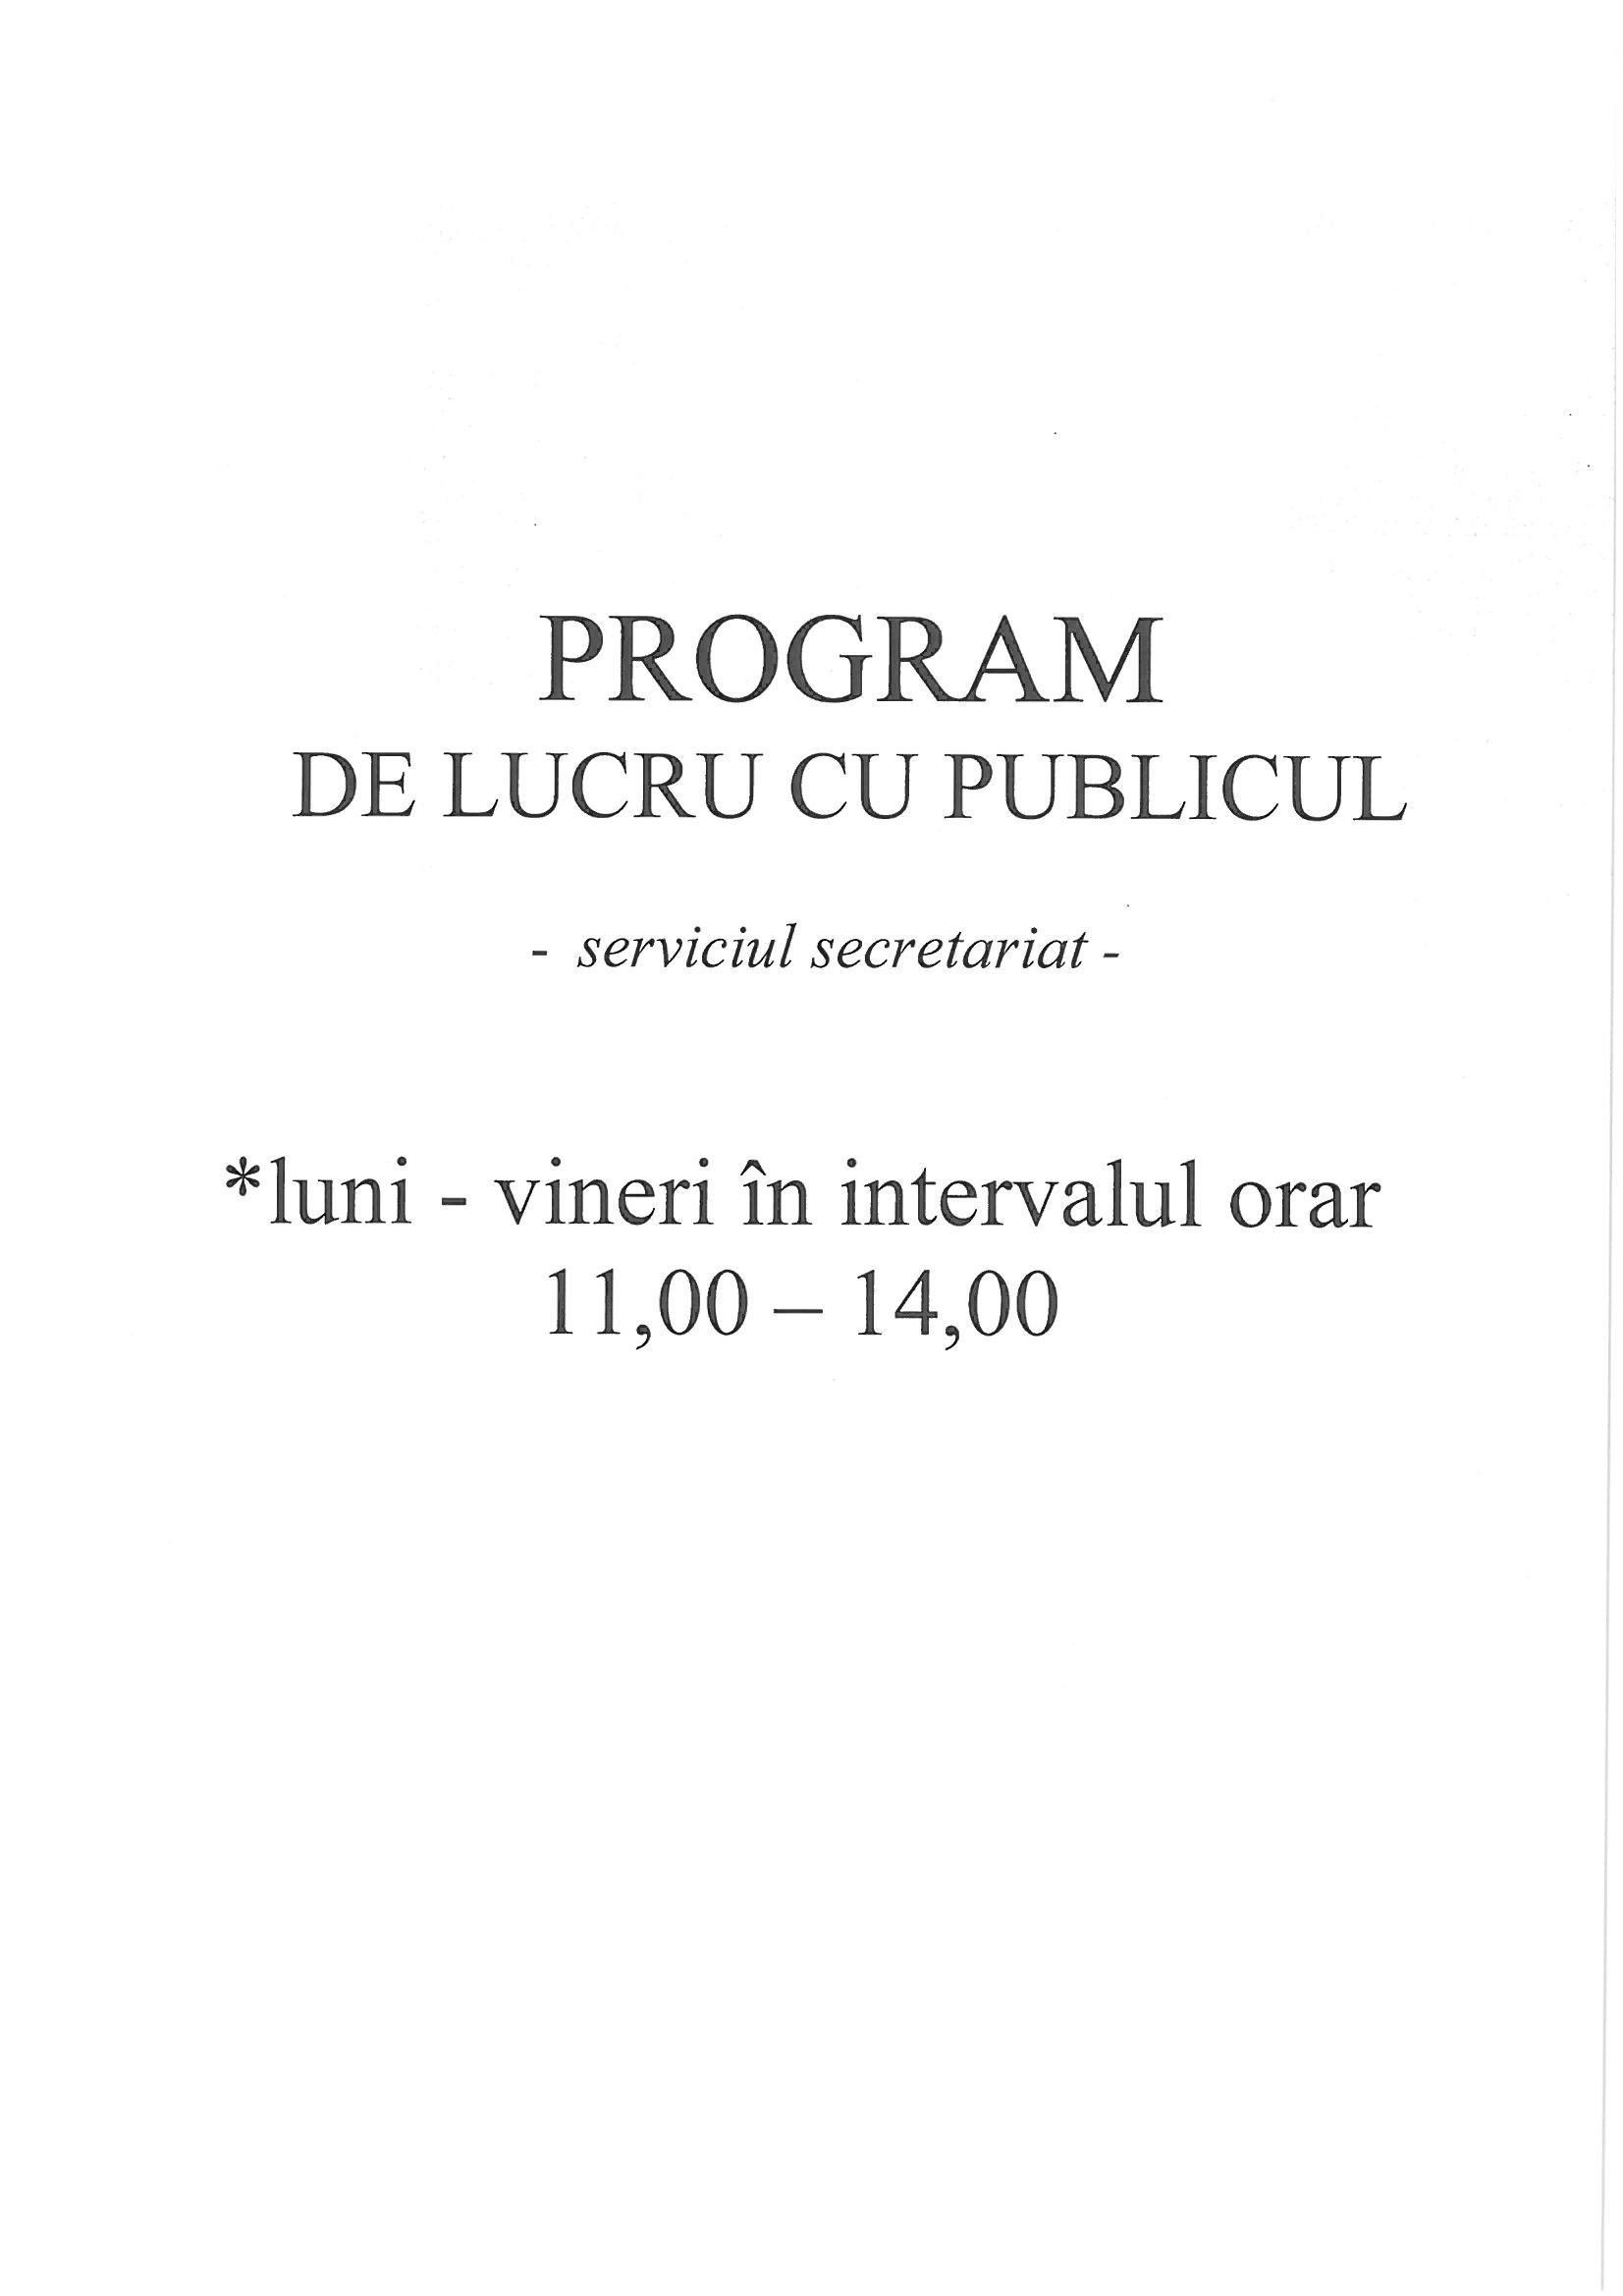 PROGRAM DE LUCRU CU PUBLICUL SERVICIUL SECRETARIAT